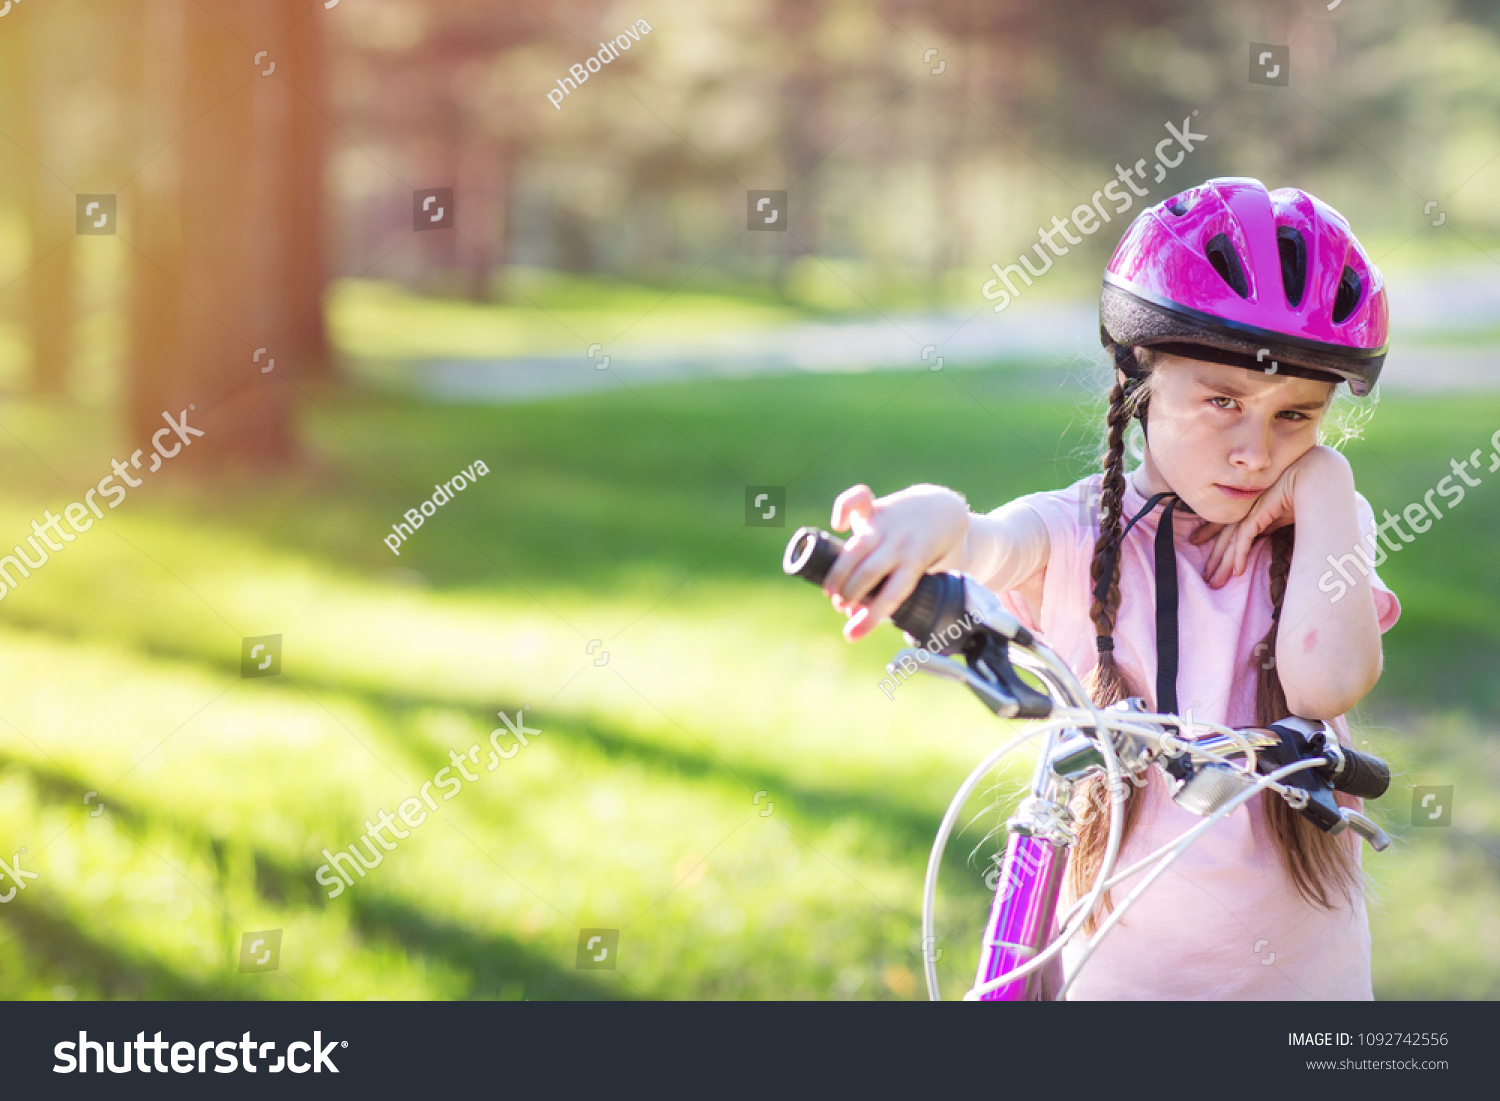 child protective helmet